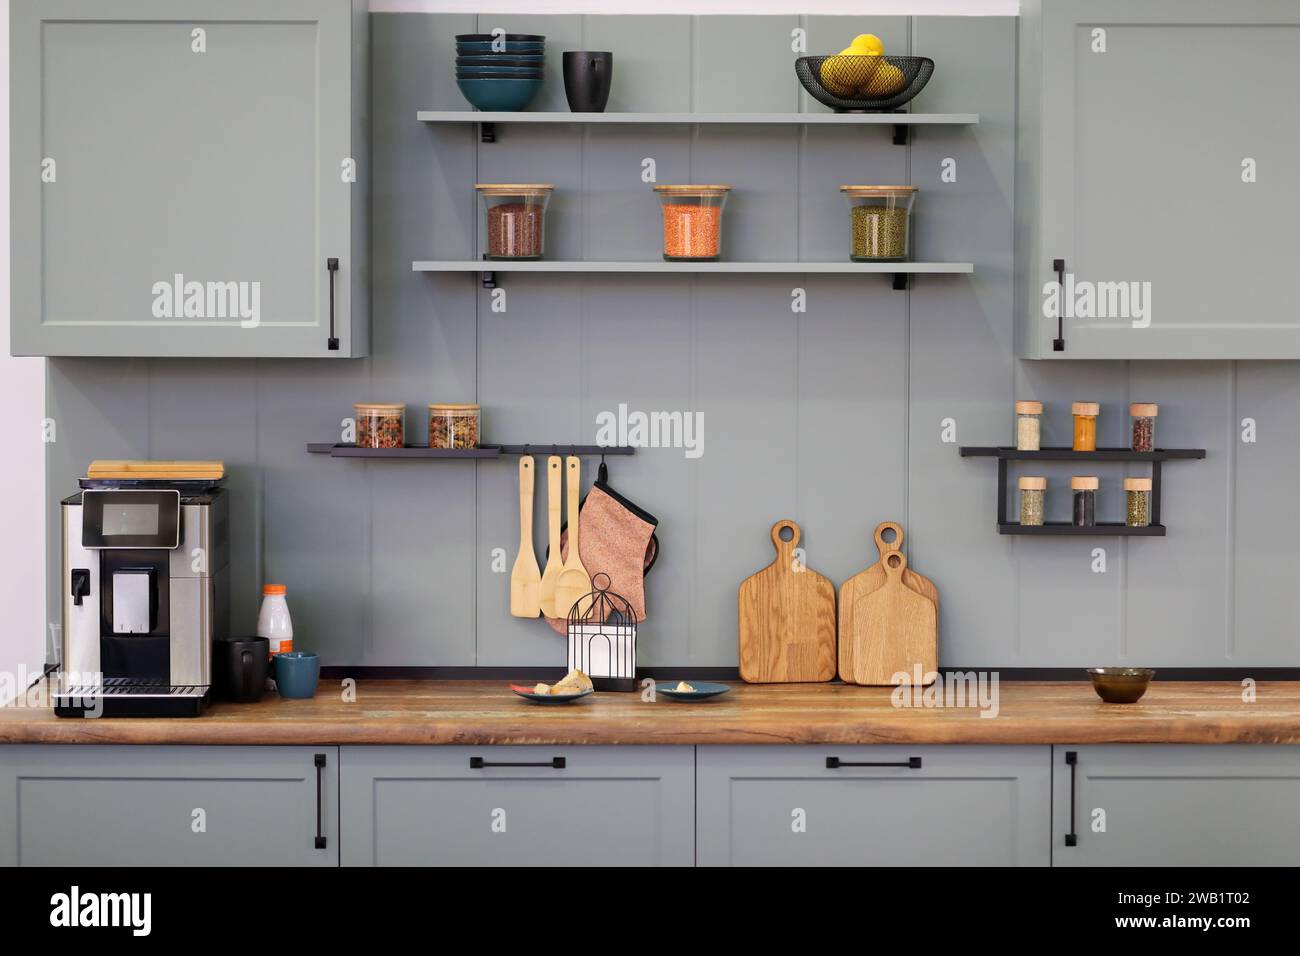 Interni moderni in cucina grigi con alcuni utensili da cucina. Messa a fuoco selettiva. Foto Stock